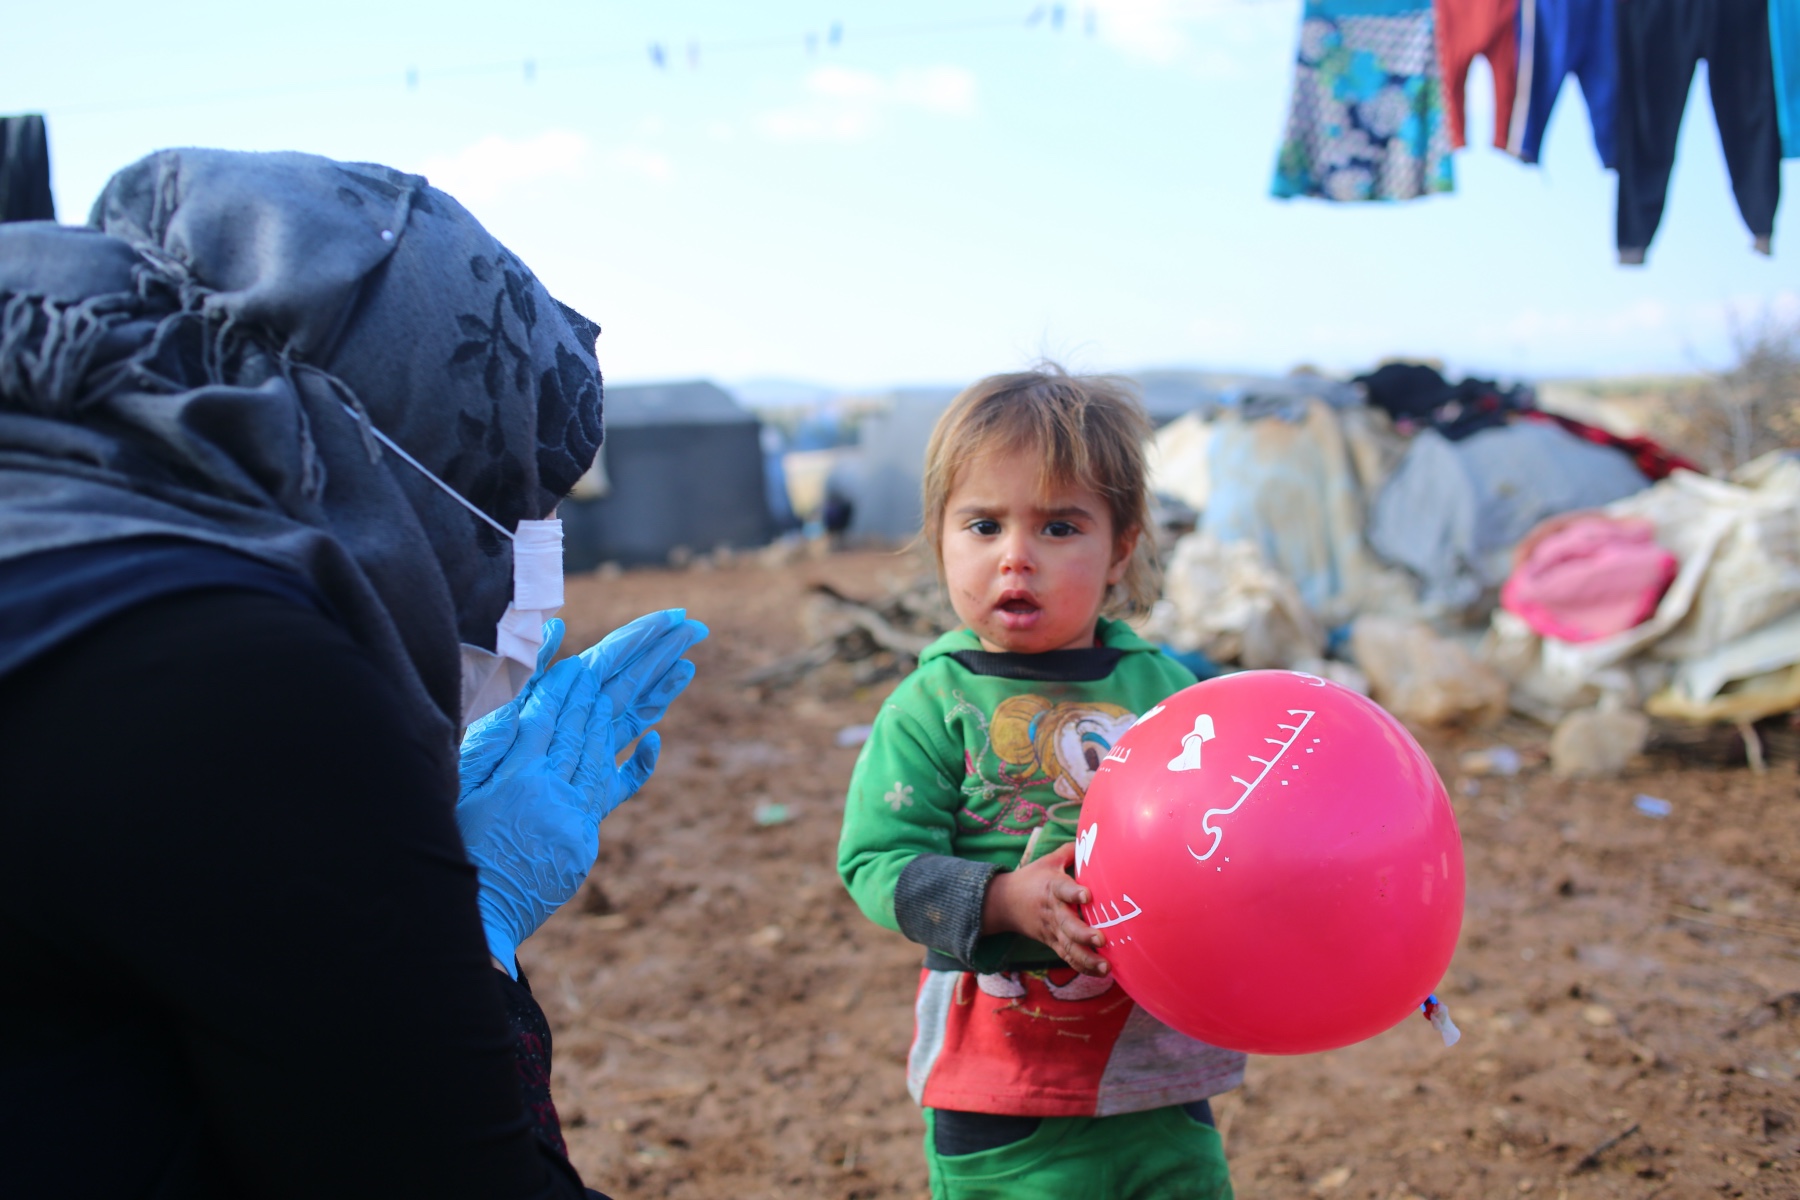 Kind mit einem Luftballon und eine Frau mit Kopftuch und Hygienehandschuhen in einem Flüchtlingscamp.